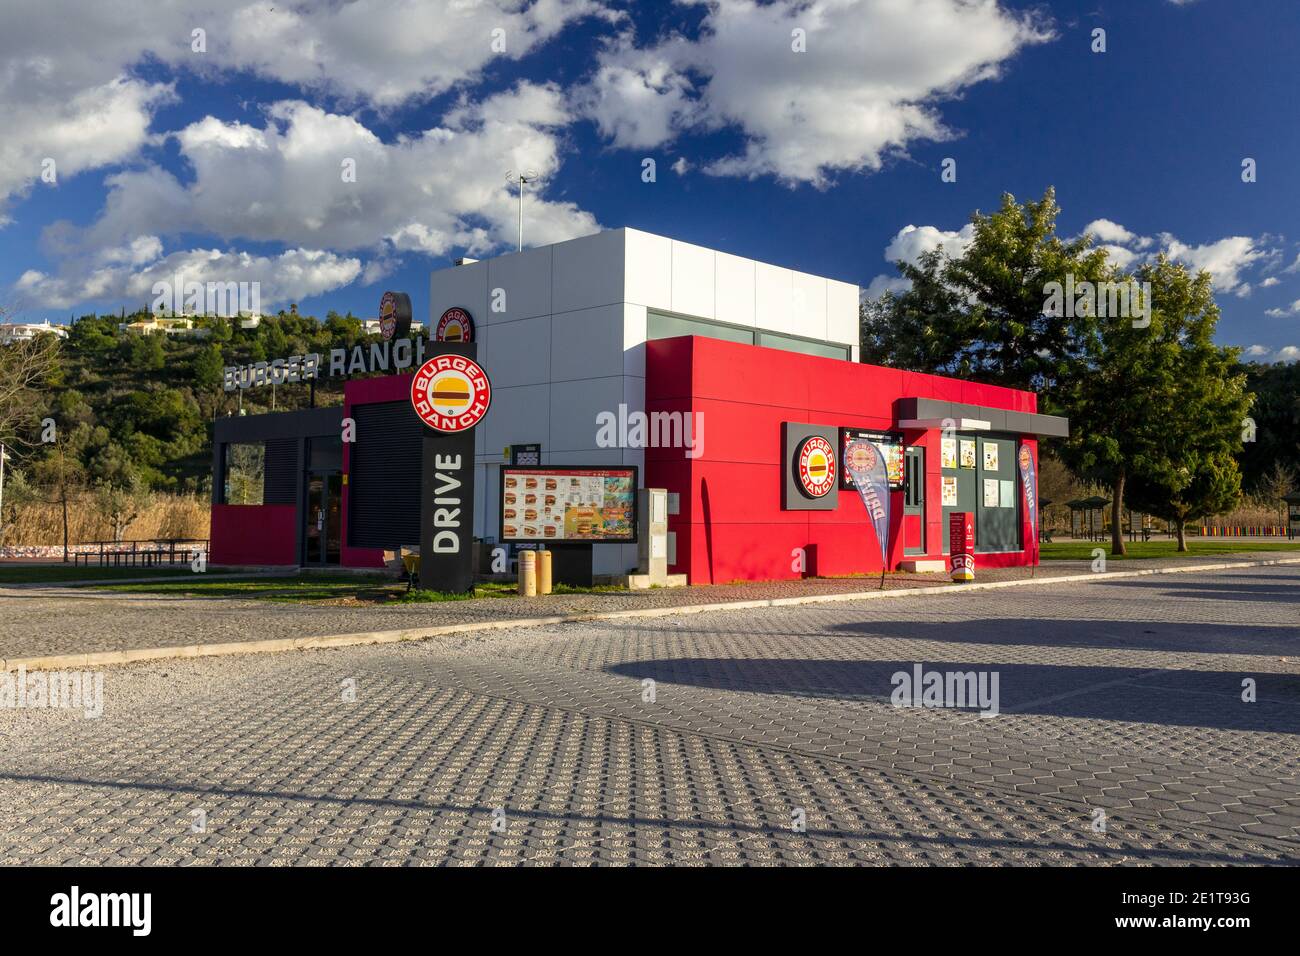 Nouveau restaurant de restauration rapide Burger Ranch à Silves Portugal, Burger Ranch est UNE chaîne de restaurants portugais basée dans l'Algarve Portugal Banque D'Images